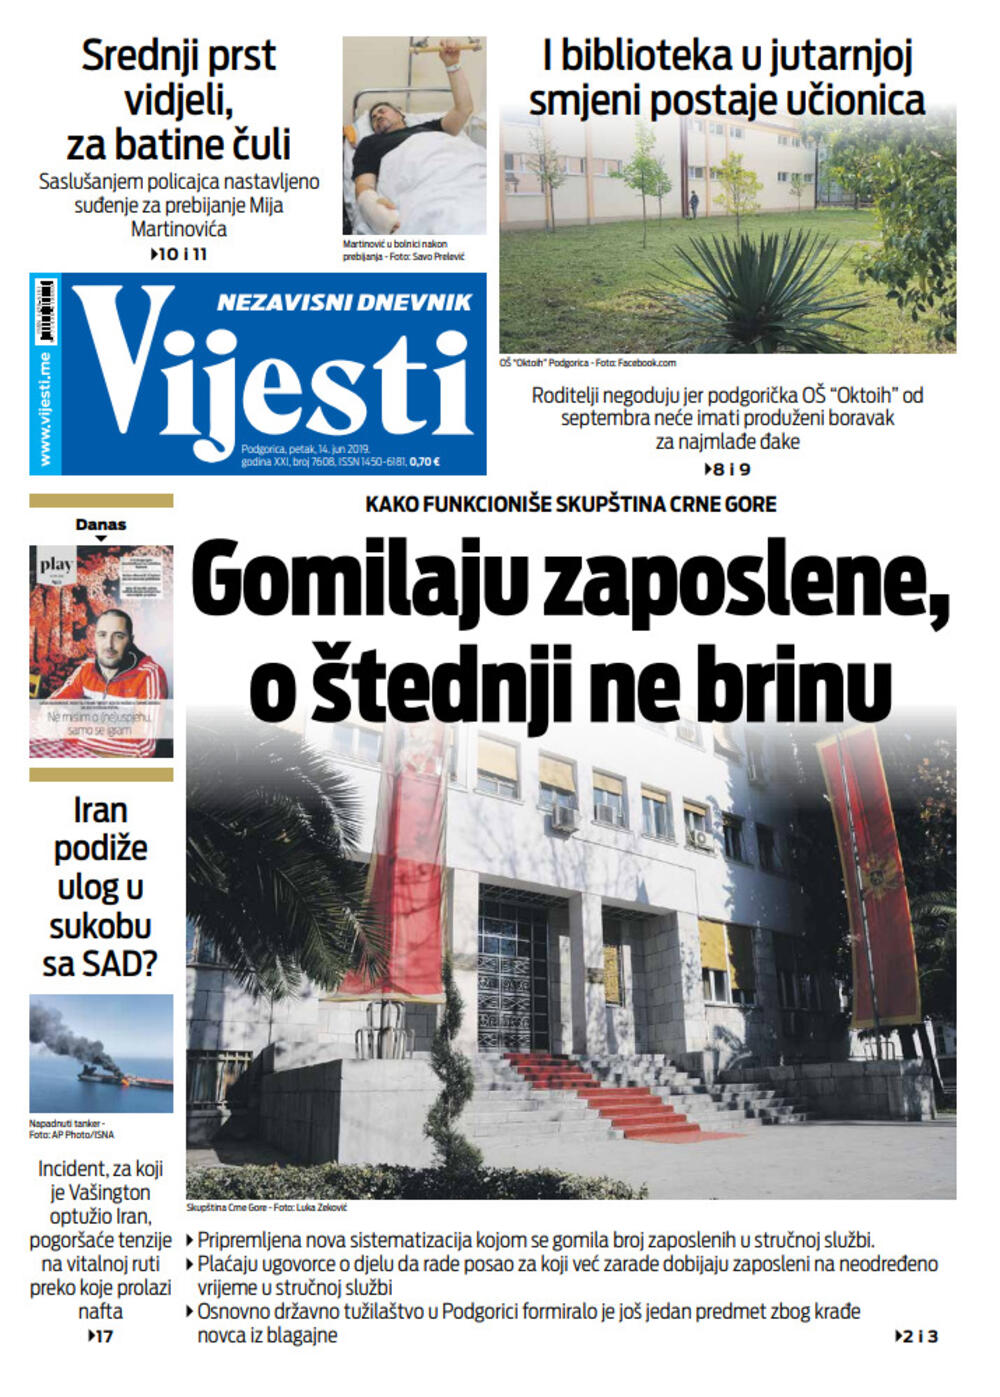 Naslovna strana "Vijesti" za 14. jun, Foto: Vijesti